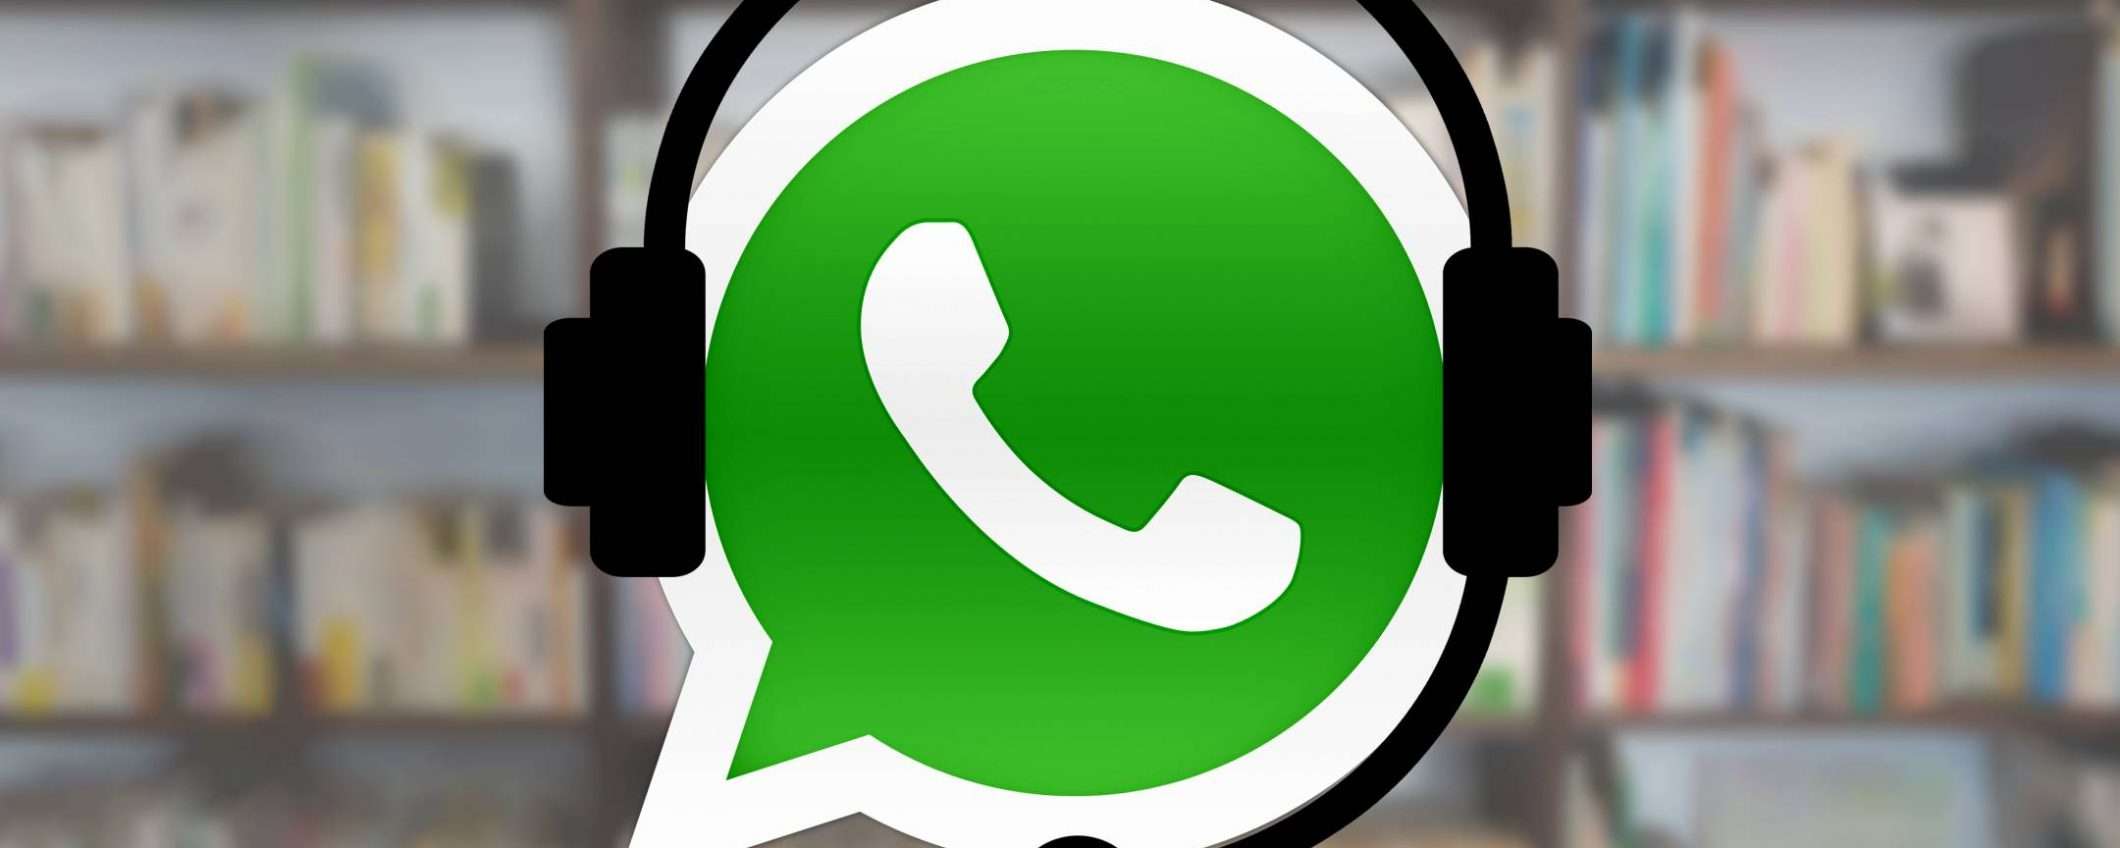 Facebook può leggere messaggi WhatsApp? Il chiarimento